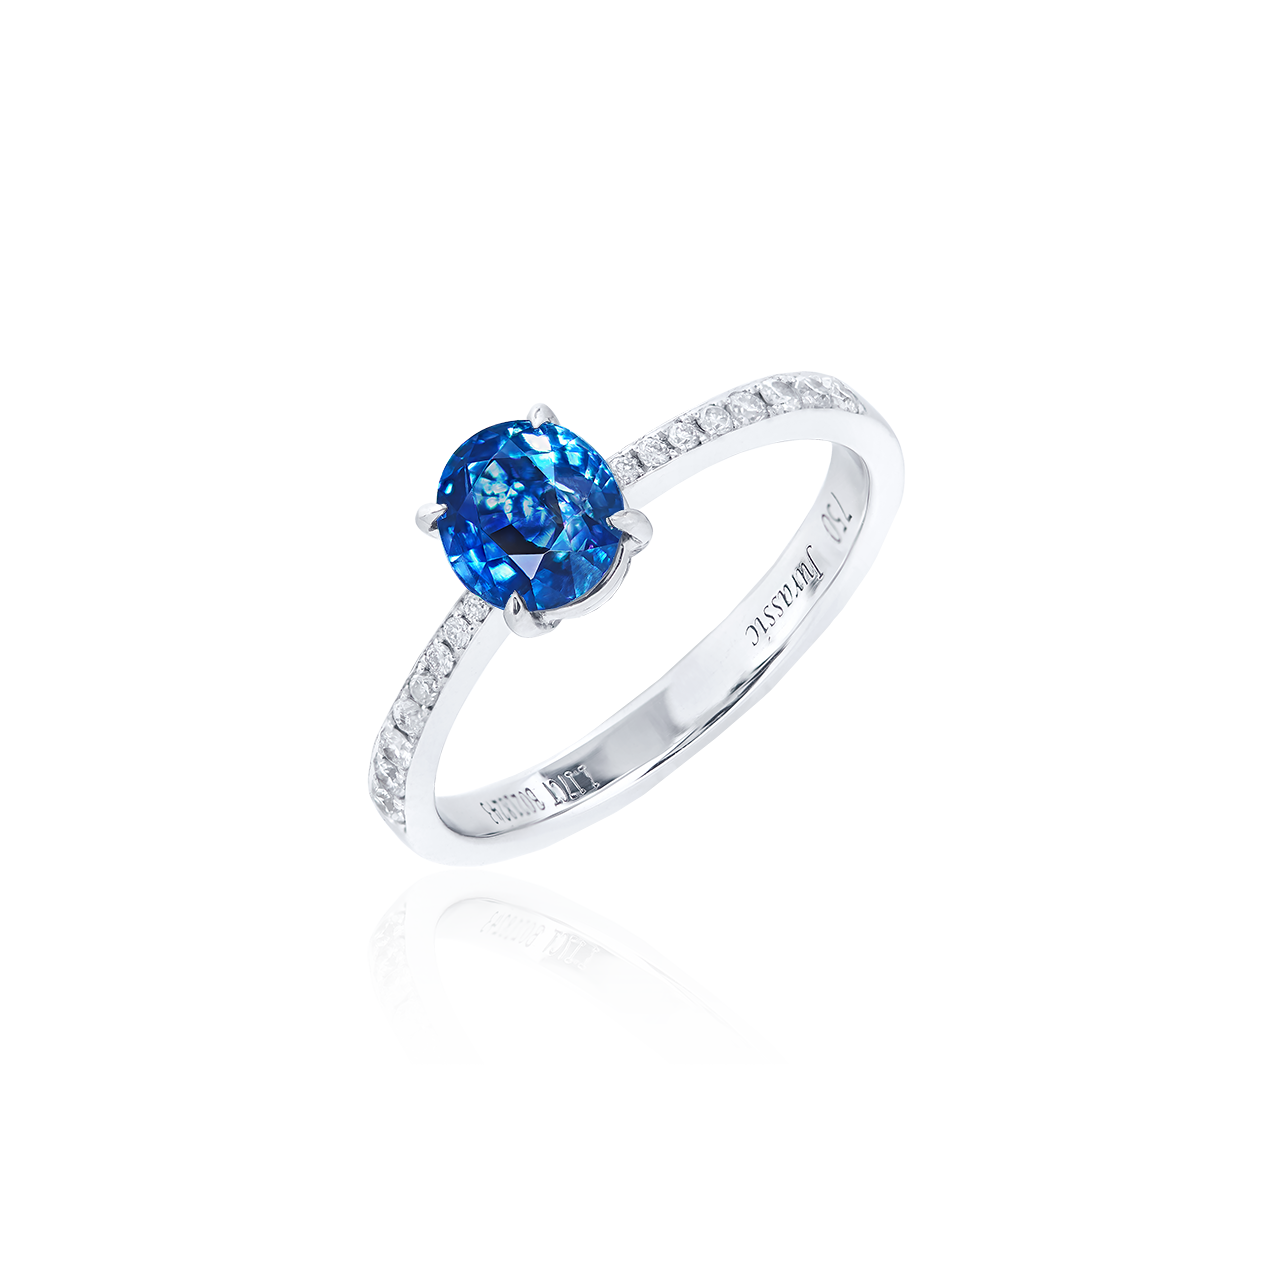 1.17克拉 無燒皇家藍藍寶石鑽戒
Royal Blue Sapphire and 
Diamond Ring